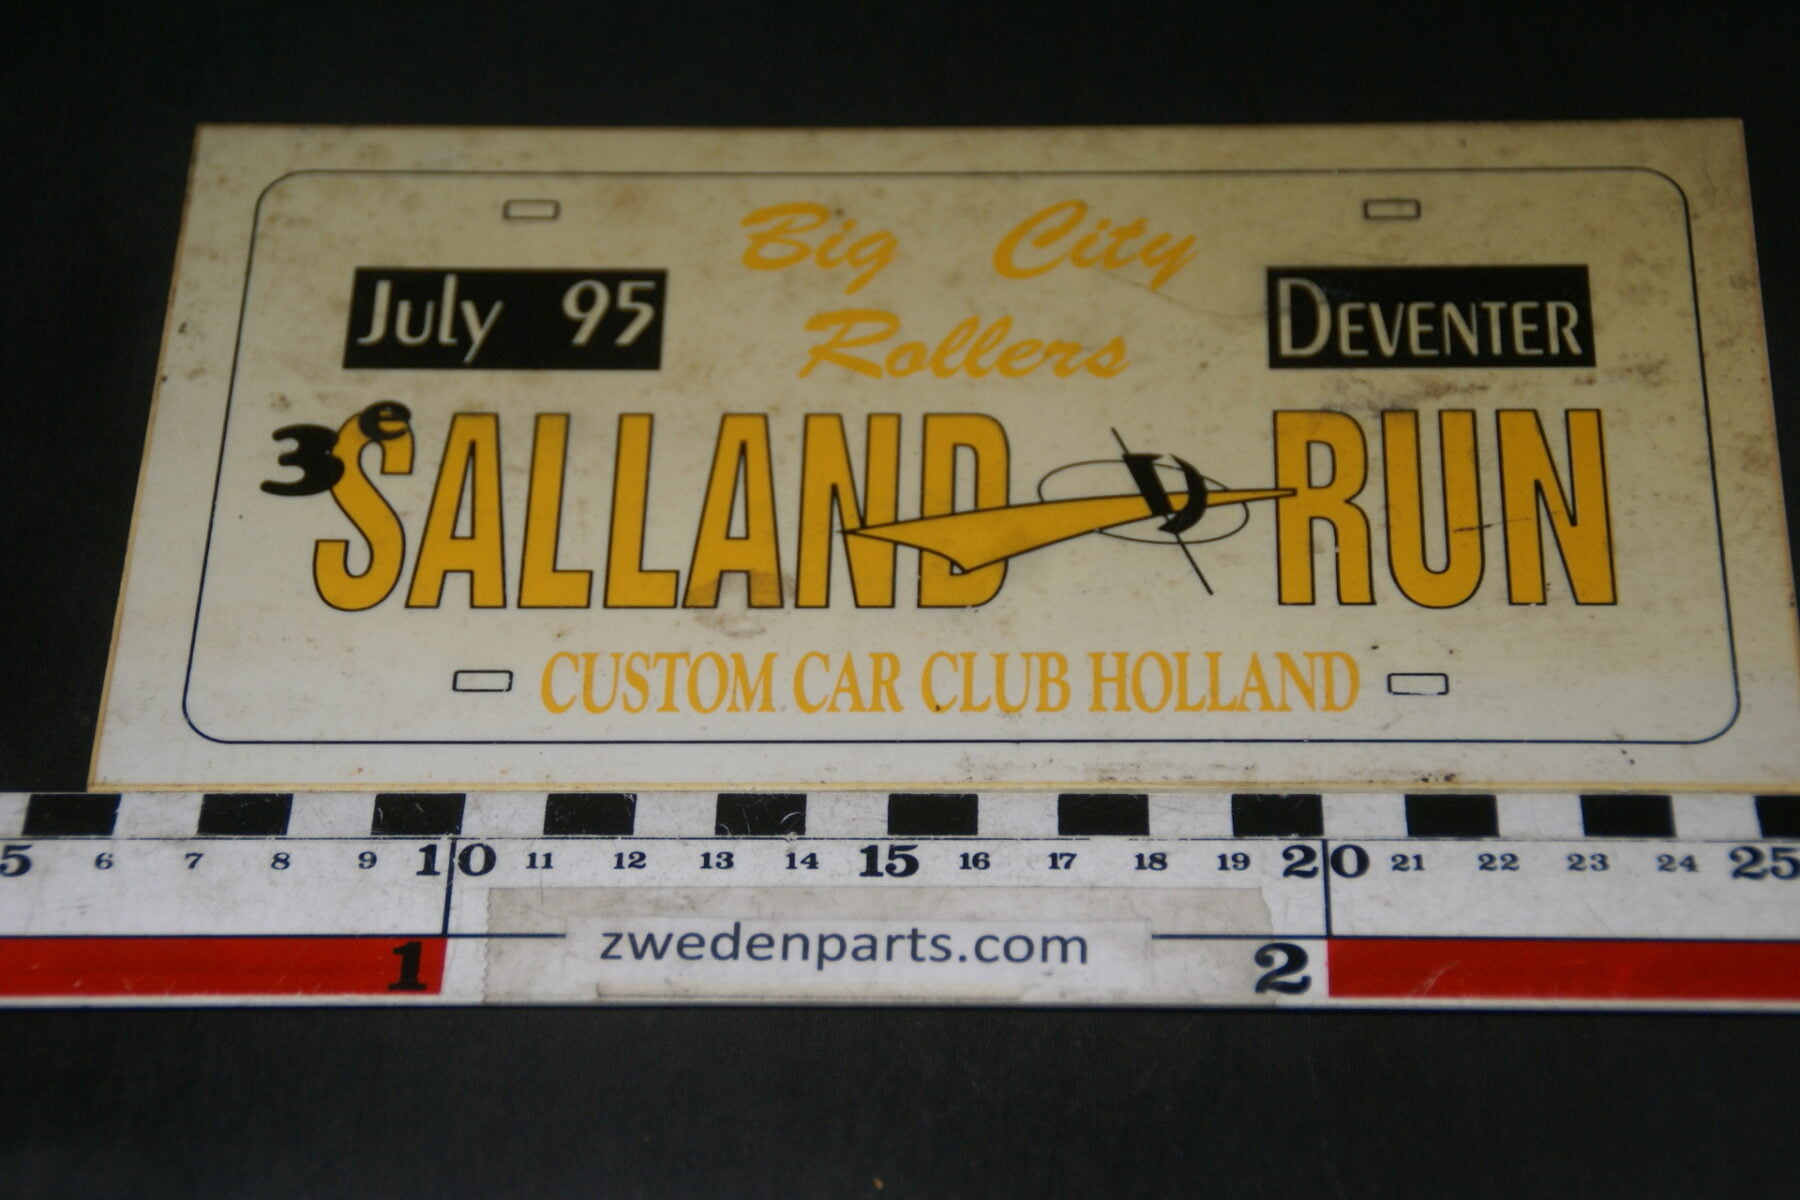 DSC03705 1995 origineel rallybord Salland Run Deventer-89d90f9a